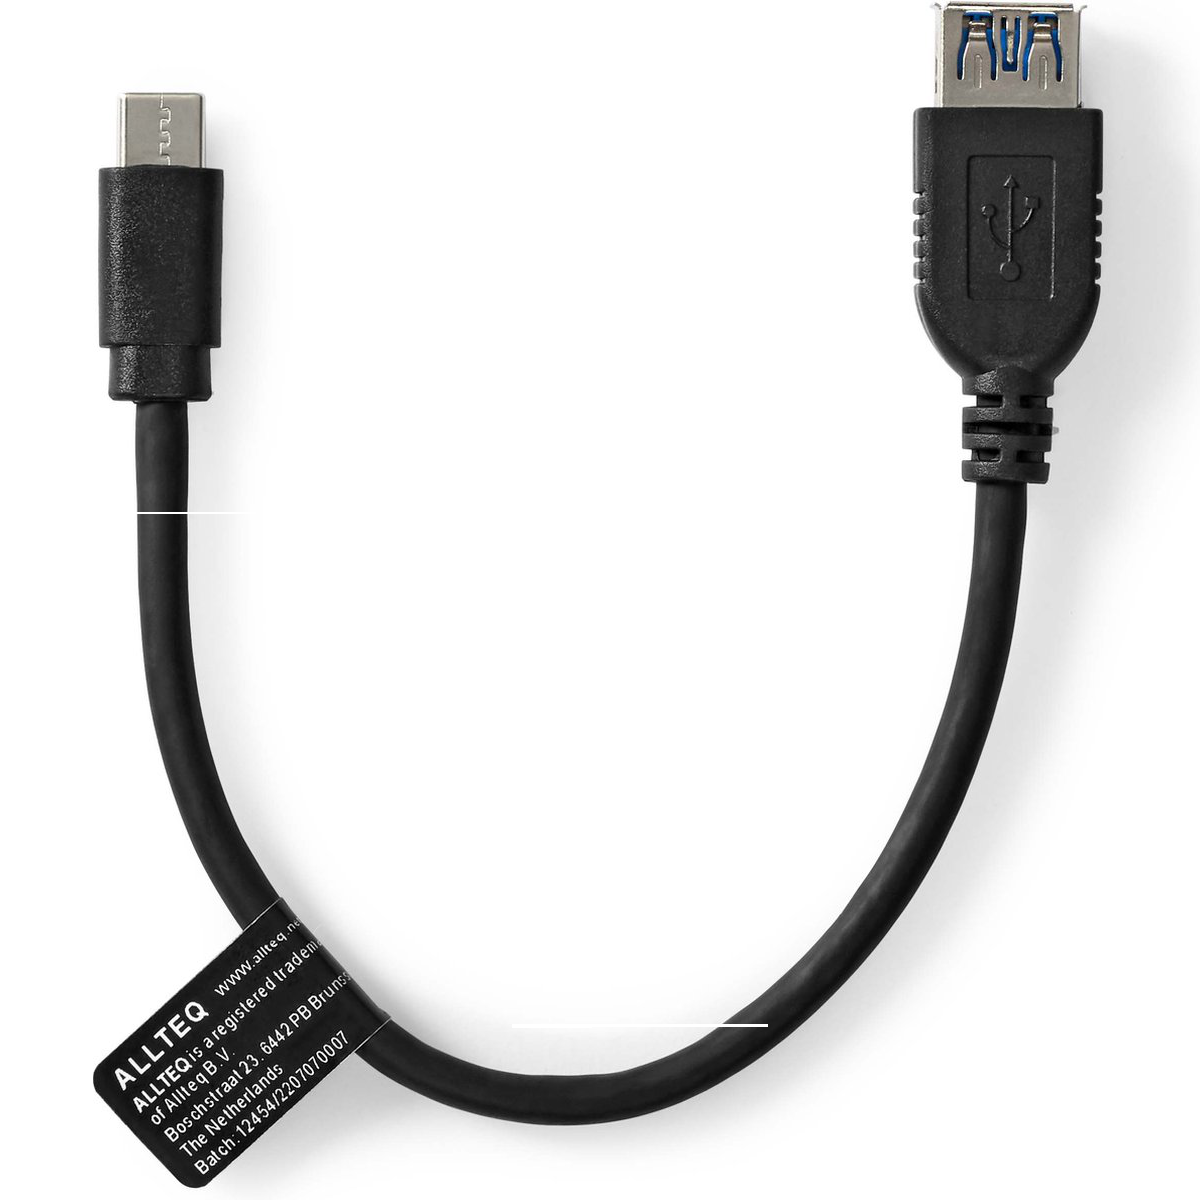 Politiebureau keuken Instrument USB C naar USB A kabel - Versie: 3.0 - SuperSpeed, Aansluiting 1: USB C  male Aansluiting 2: USB A female